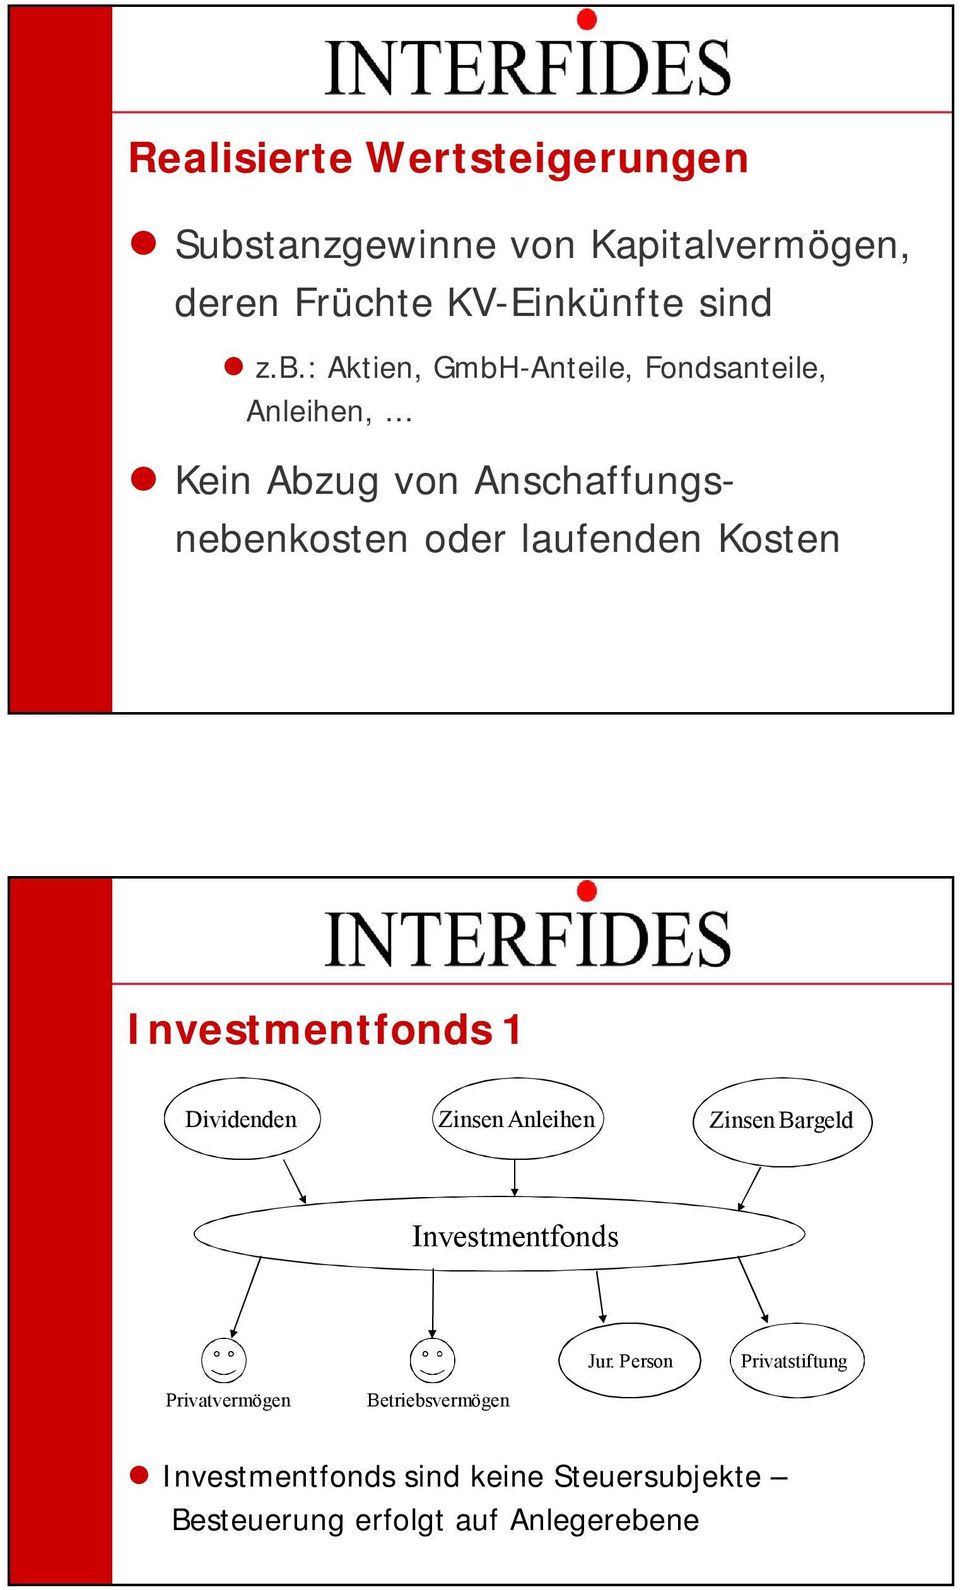 : Aktien, GmbH-Anteile, Fondsanteile, Anleihen, Kein Abzug von Anschaffungsnebenkosten oder laufenden